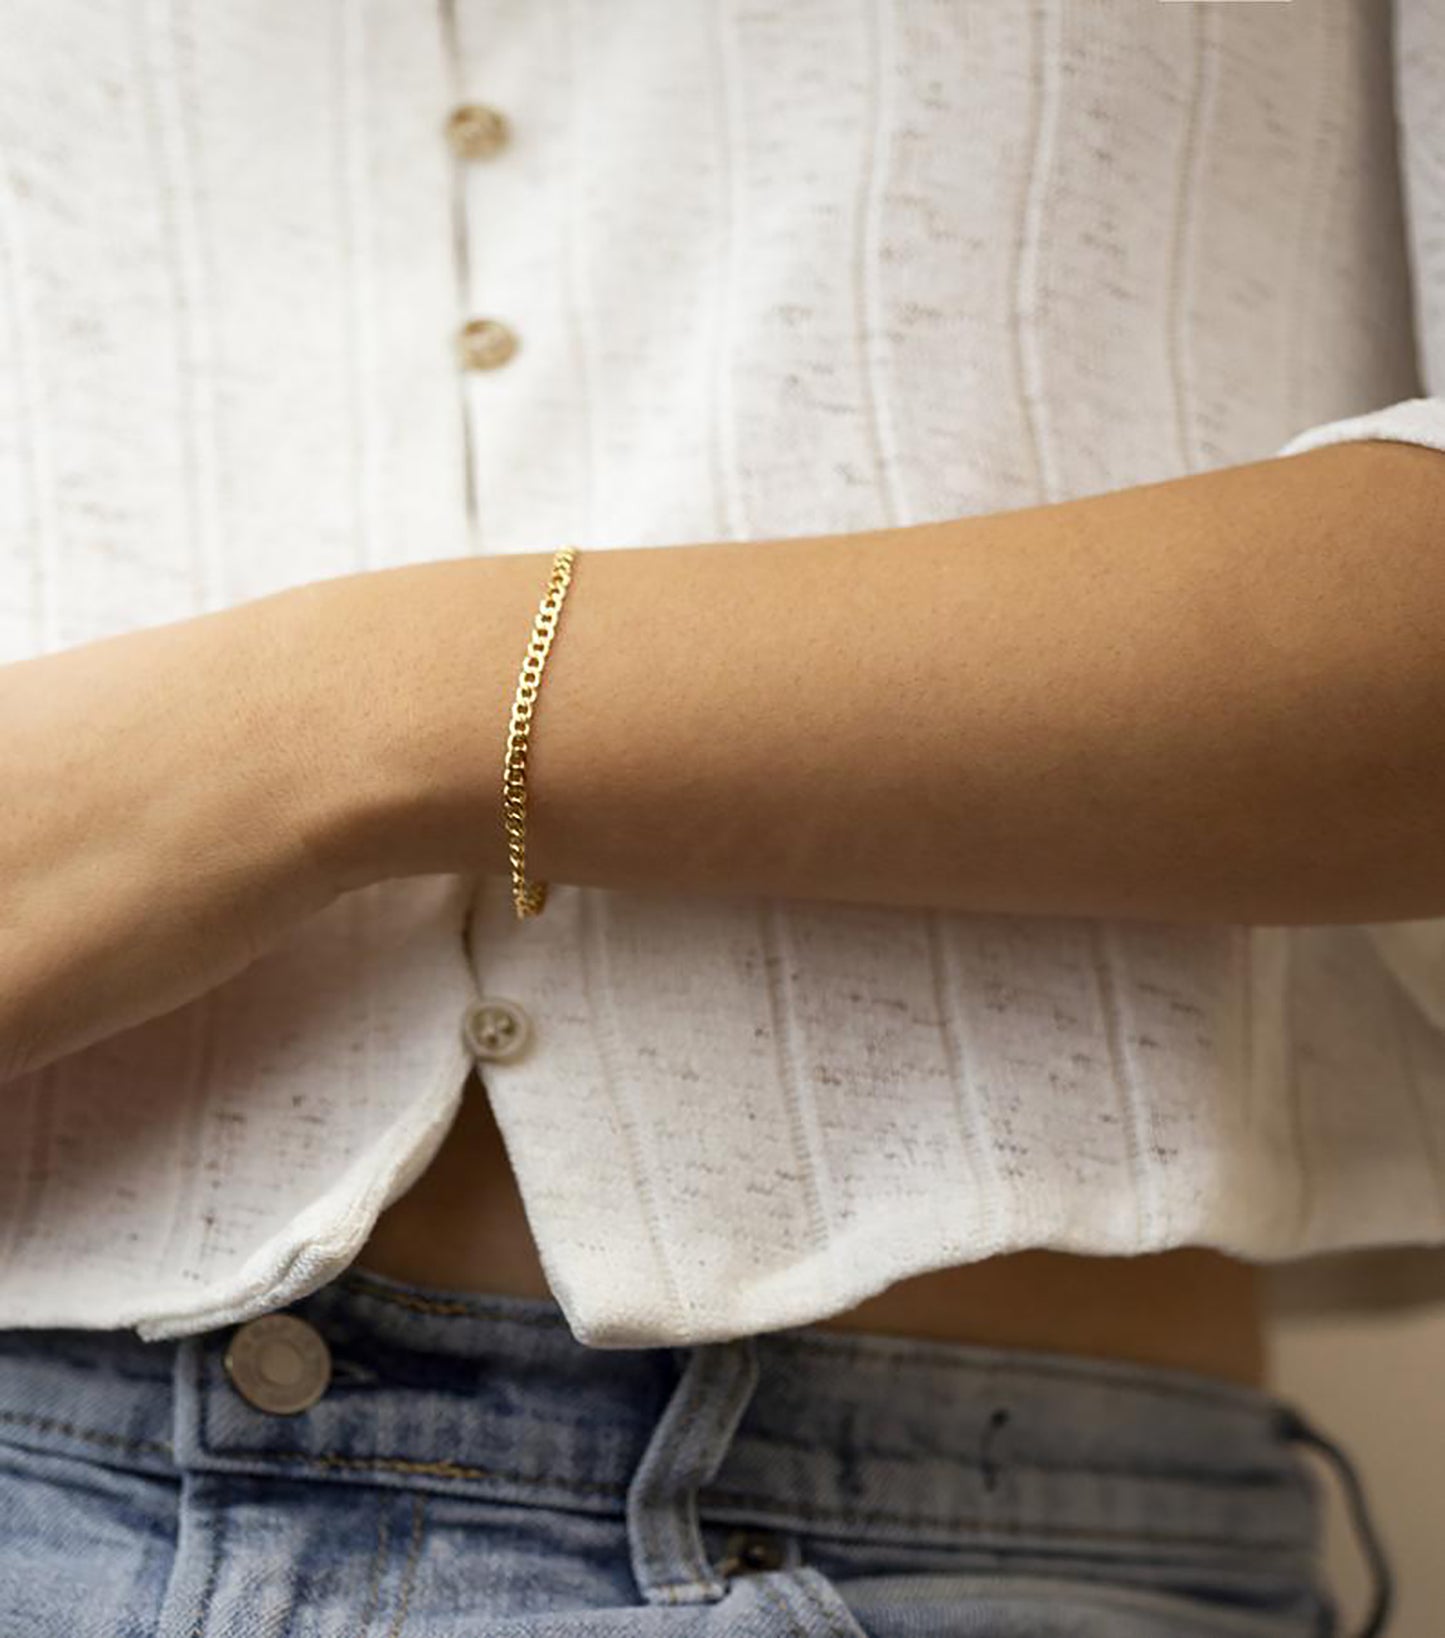 TASISO Delicate Curb Chain Bracelet for Women